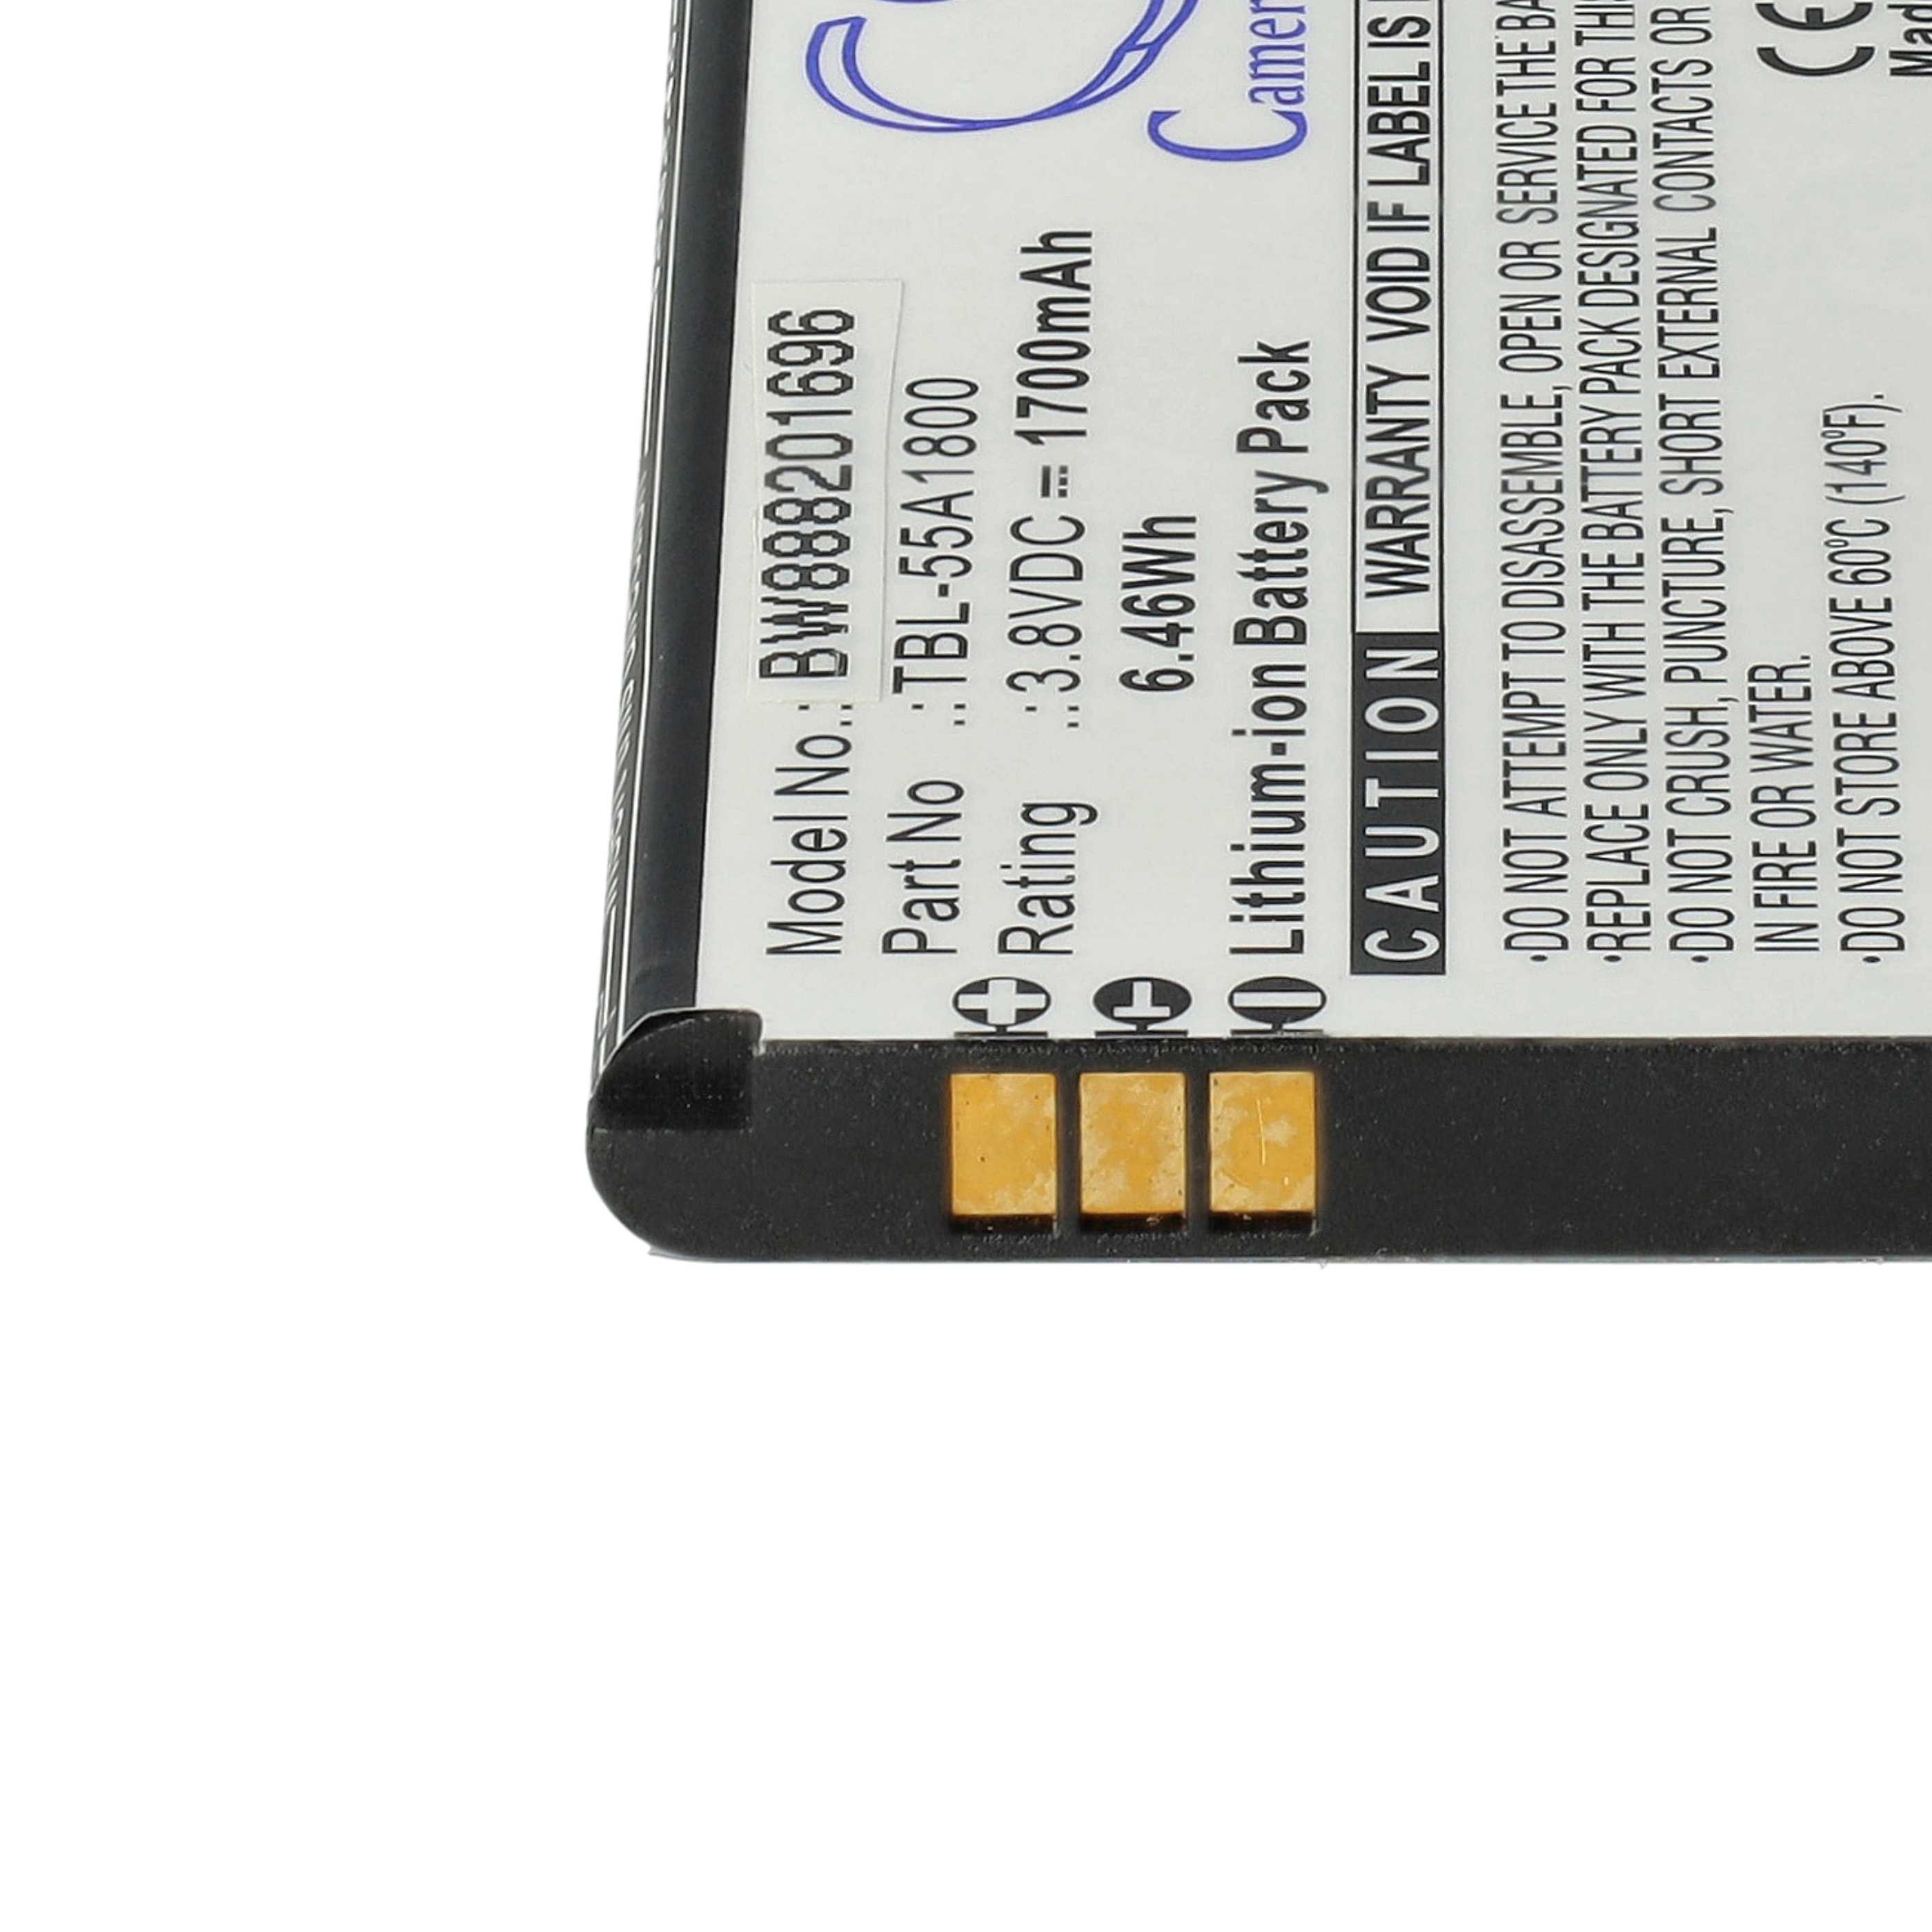 Batteria per hotspot modem router portatile sostituisce TP-Link TBL-55A1800 TP-Link - 1700mAh 3,8V Li-Ion